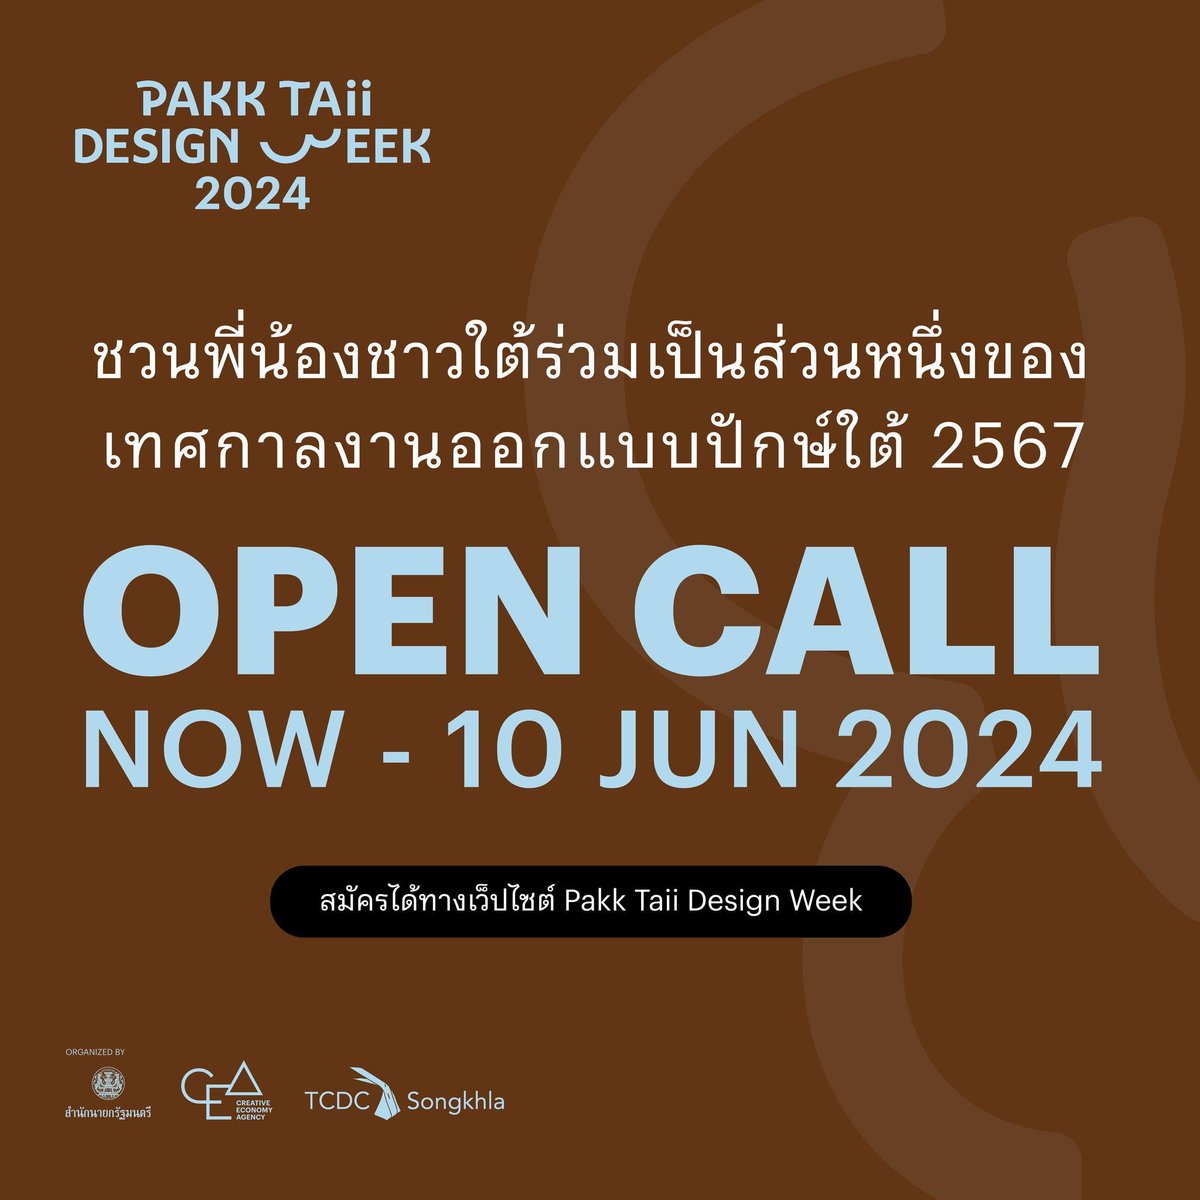 📢 มาแล้ววว #PTDW2024 OPEN CALL !!!
ปักษ์ใต้ดีไซน์วีค Pakk Taii Design Week 2024
เป็นไซต์ Design Week ที่ปีที่แล้วเพิ่งเริ่มต้นจัดแต่ก็น่าสนใจมากๆ ใครสนใจอย่าลืมสมัครนะ!!!

งานจะมีวันที่ 17 - 25 สิงหาคม 2567 ภายใต้แนวคิด ‘The South’s Turn ถึงทีใต้ ได้แรงอก!’